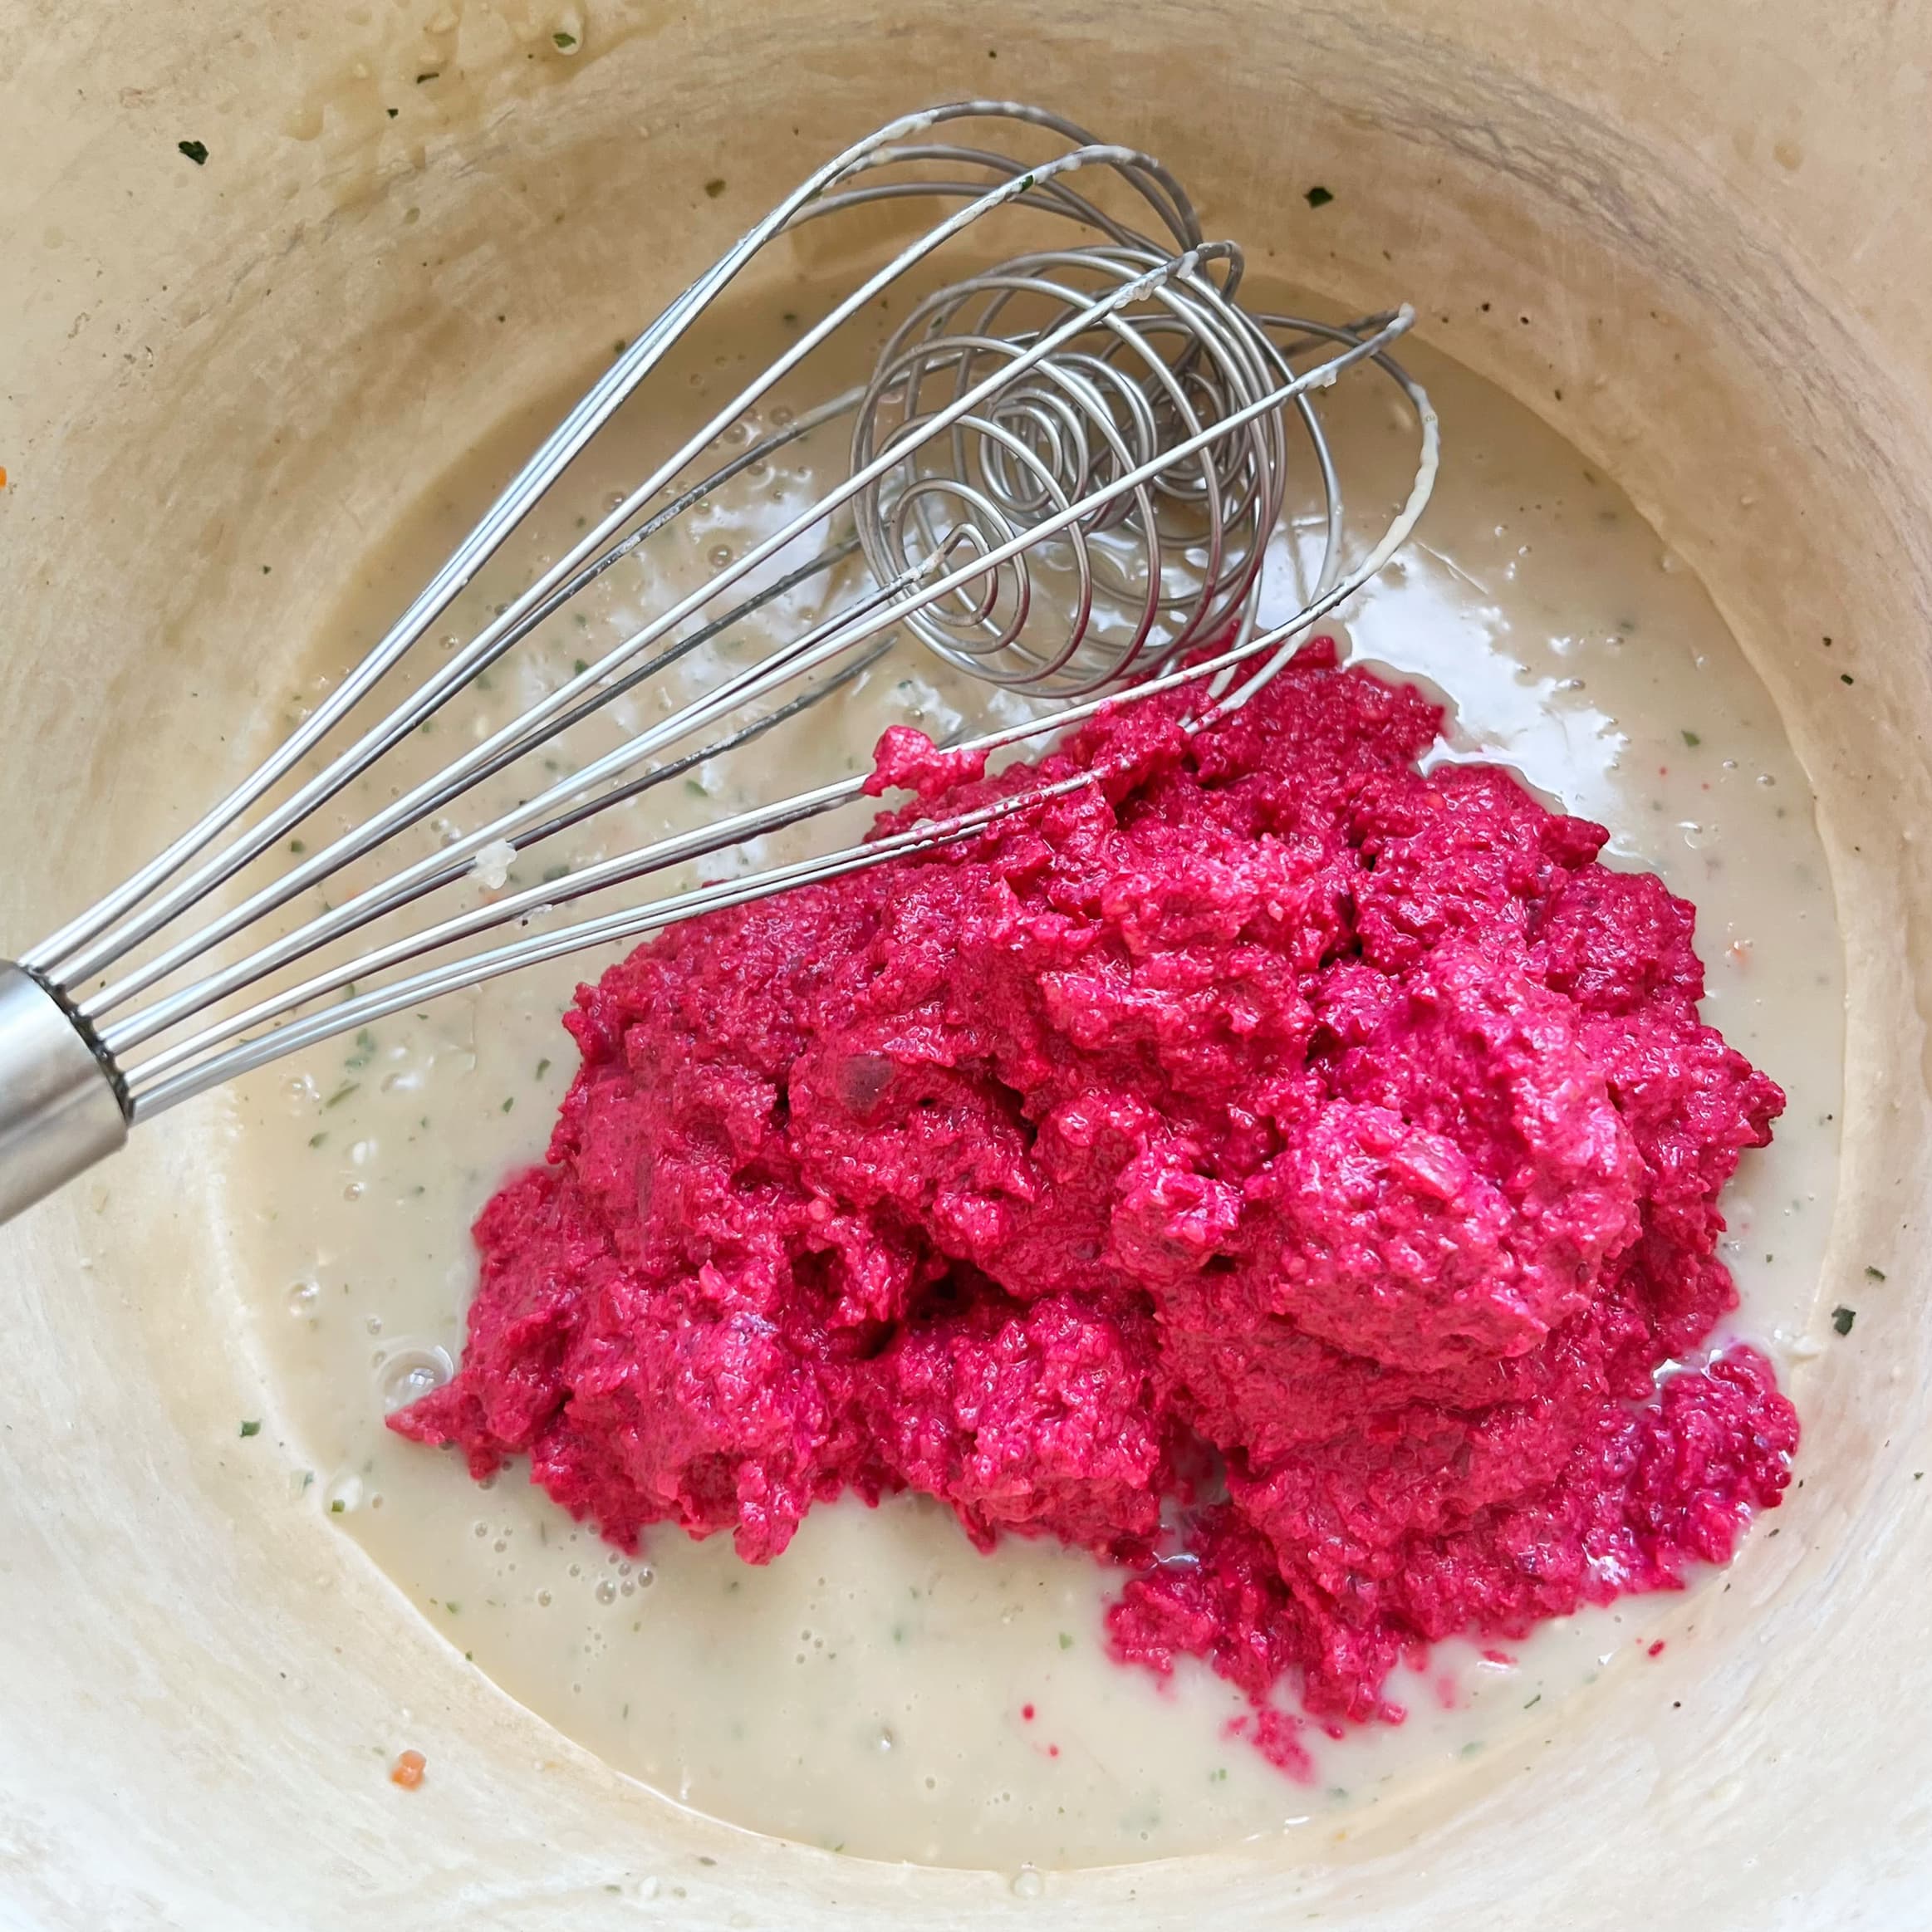 roze vegan pasta saus